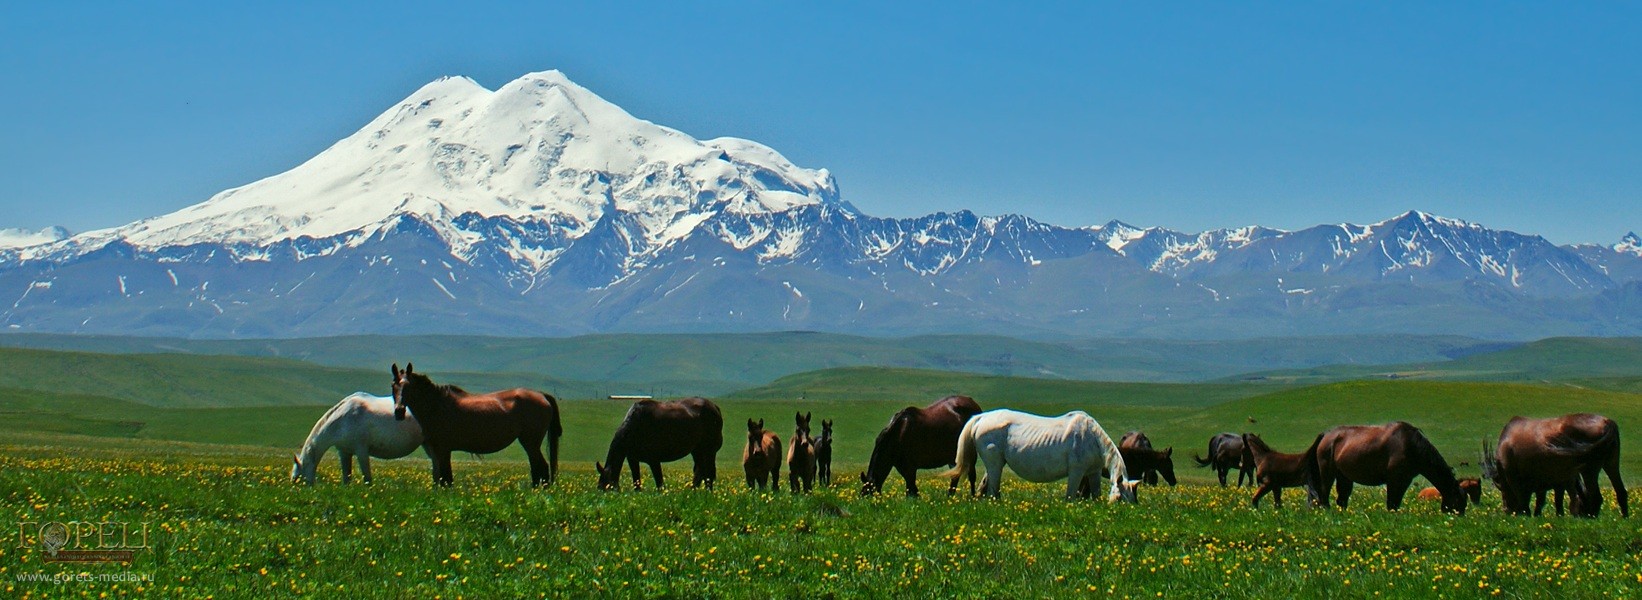 Эльбрус, главная вершина Кавказских гор